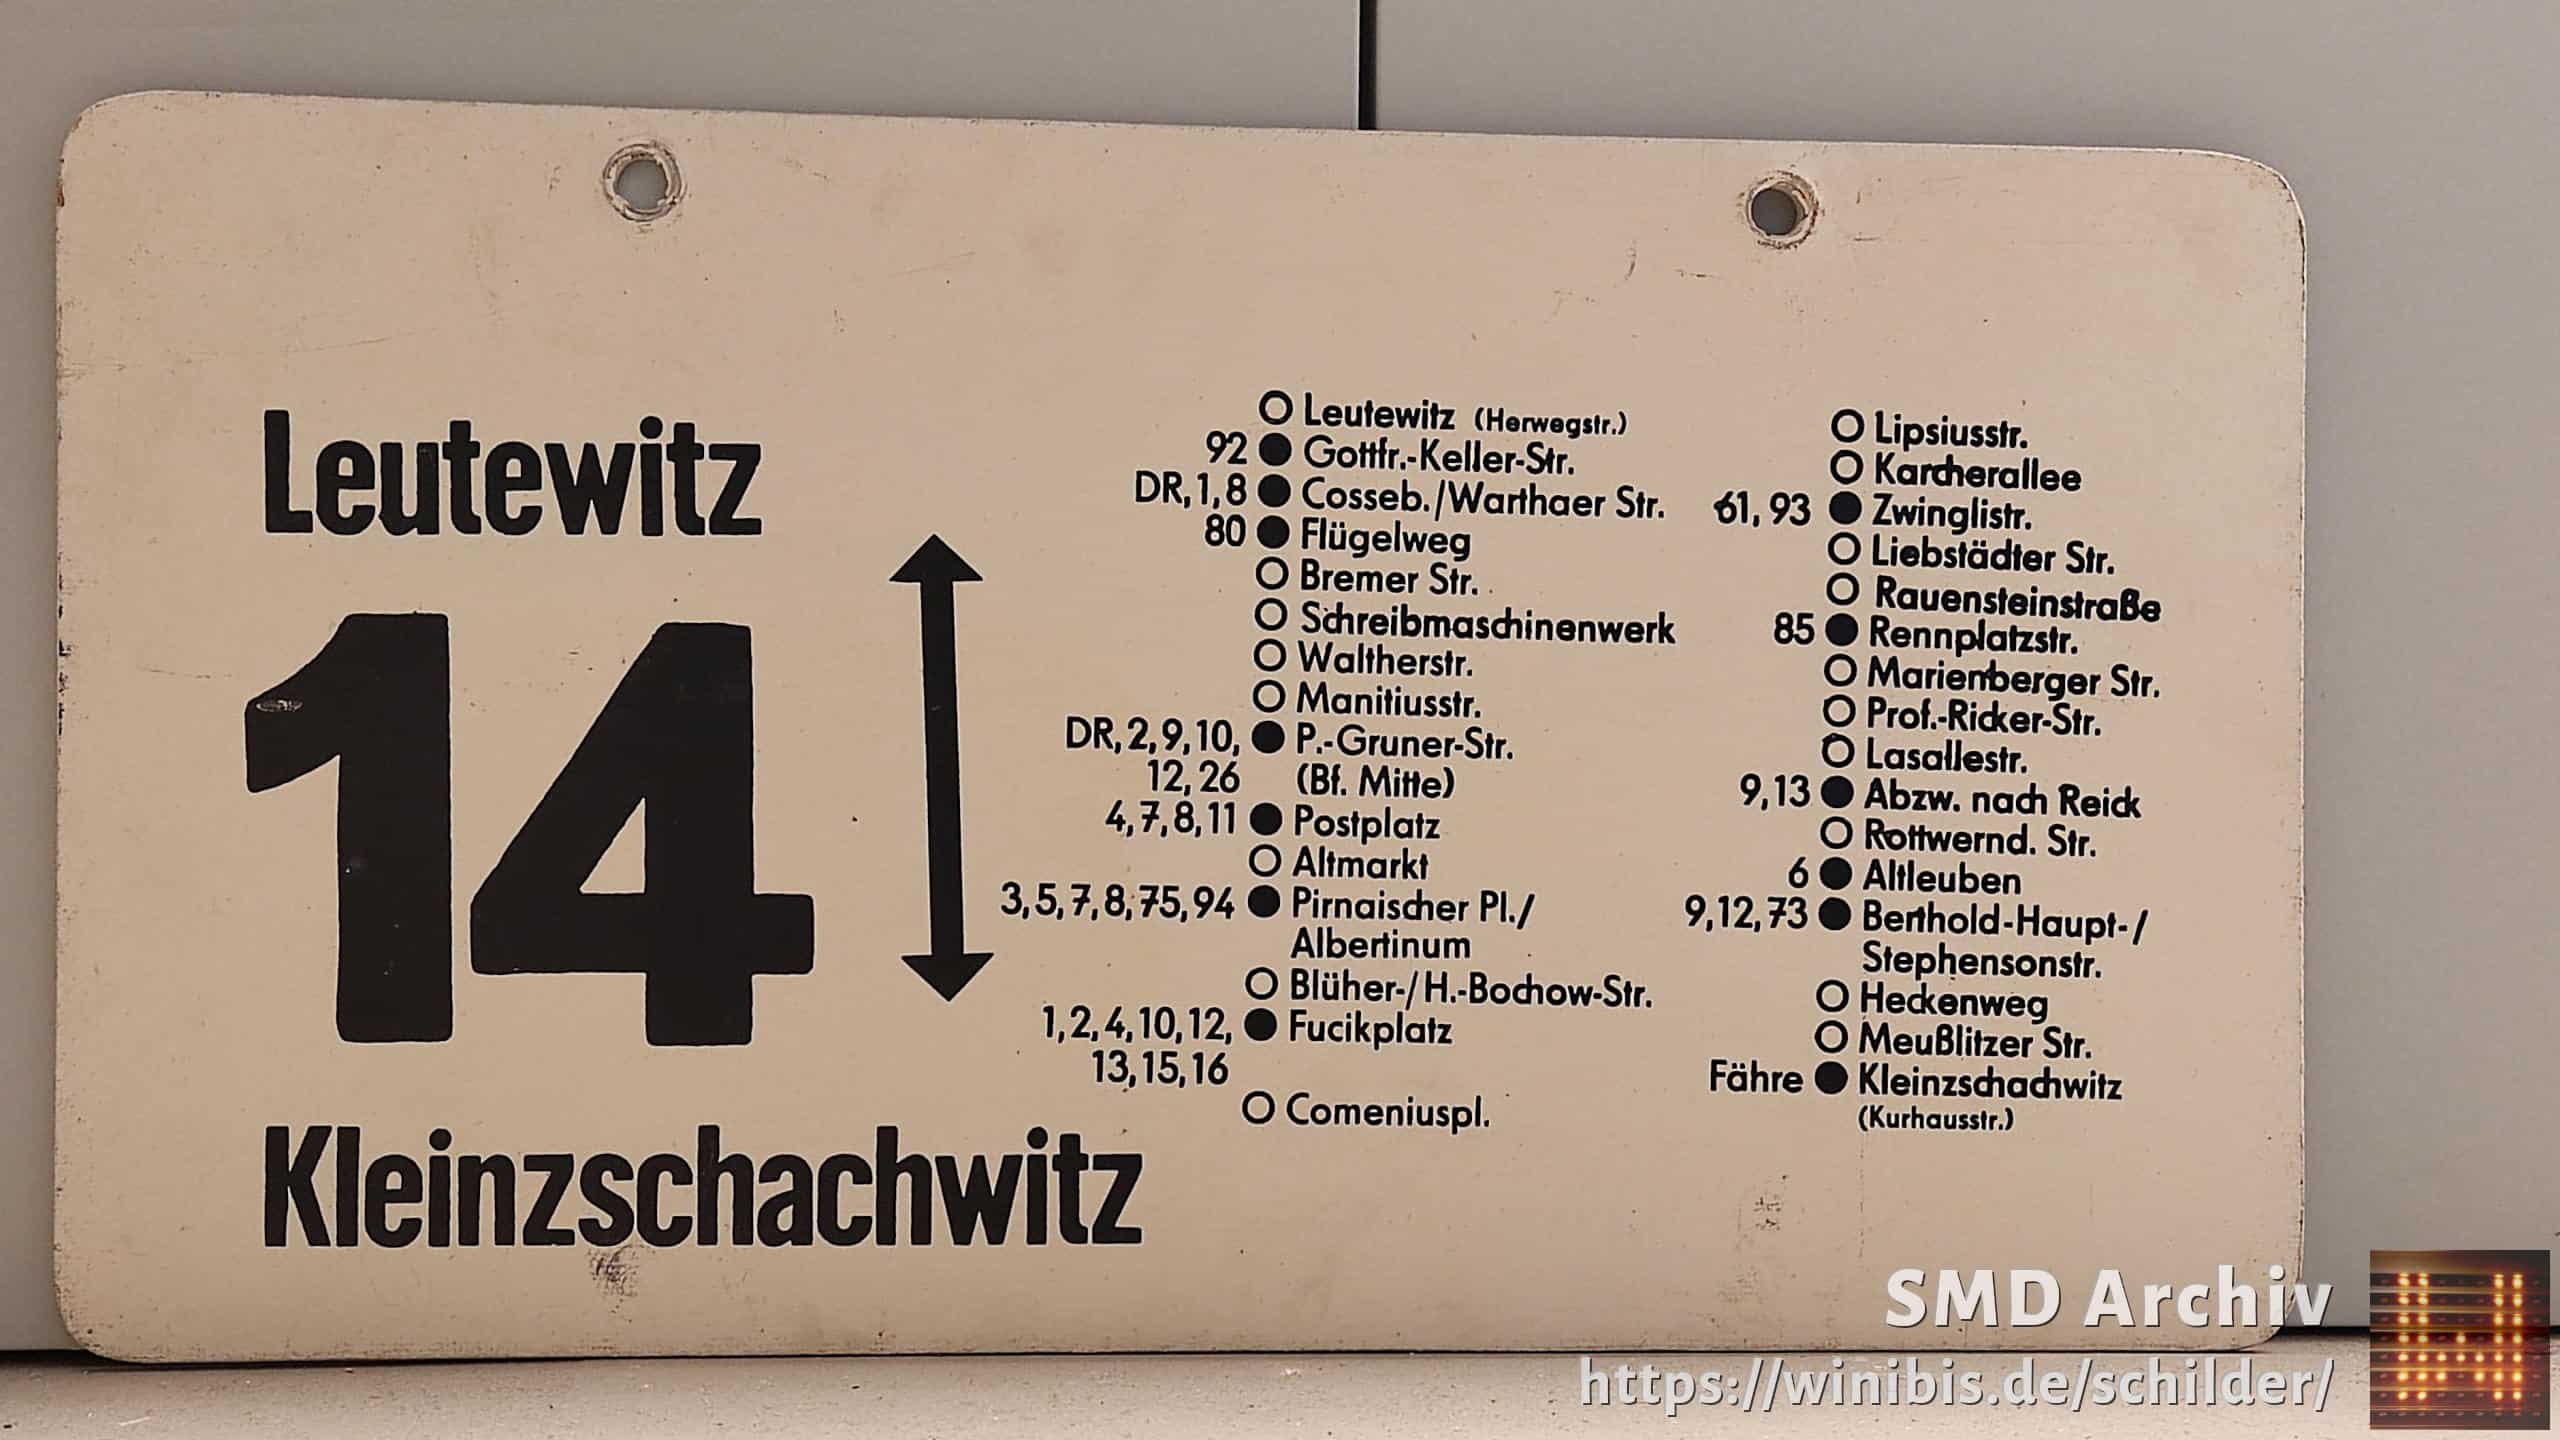 14 Leutewitz – Klein- zschachwitz #2